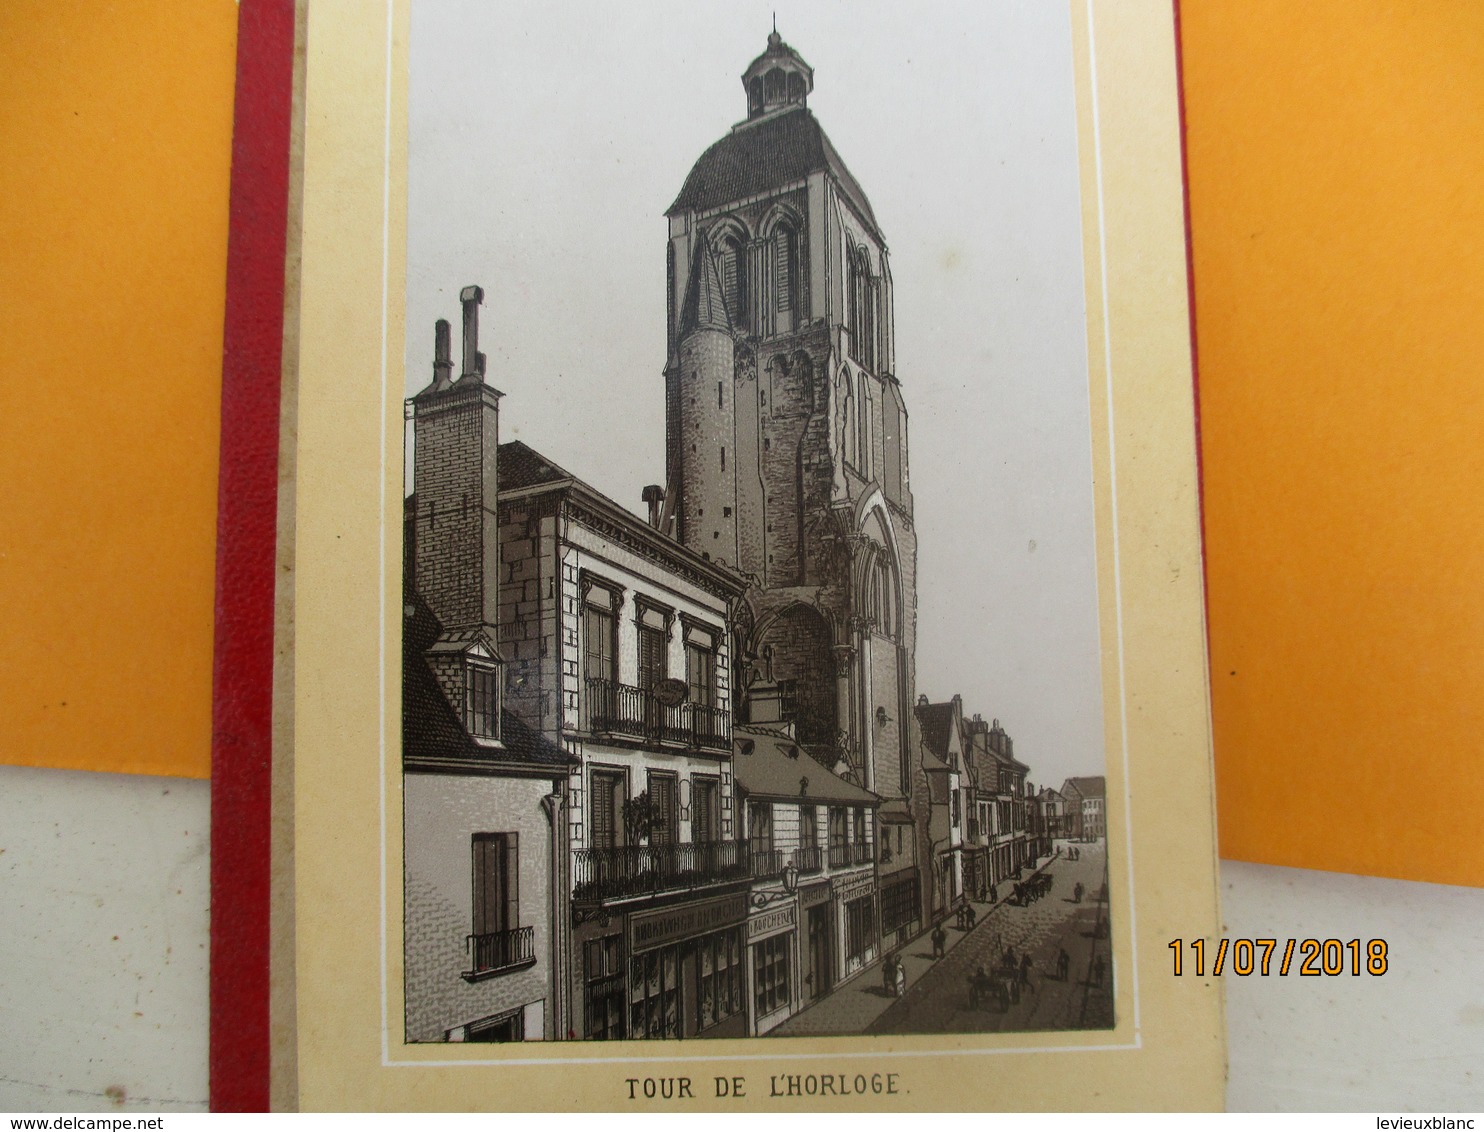 Vues de  Monuments de ville/TOURS/14 Vues /En accordéon/ Neurdein / Pinkau LEIPZIG/Vers 1880-1890         PGC237